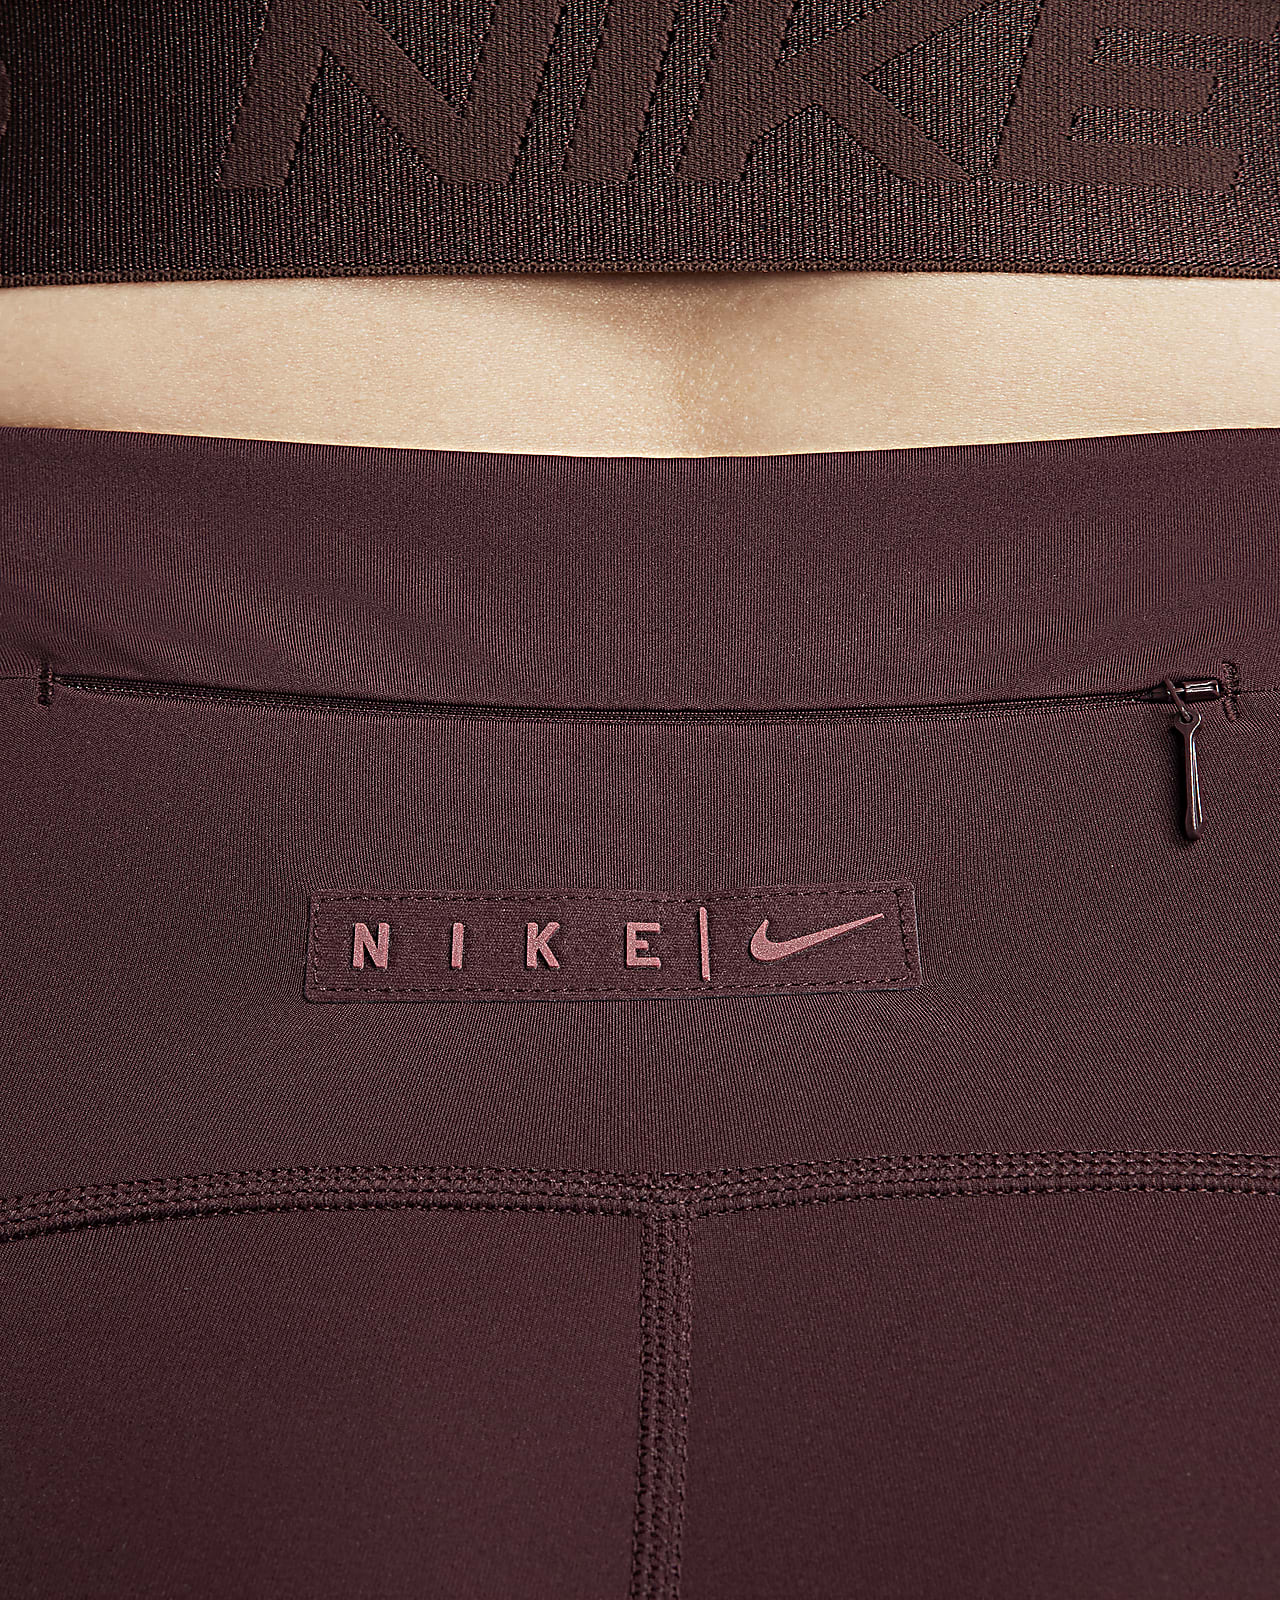 Women's Nike Pro XSmall Burgundy Tight Fit/Full Length Legging New